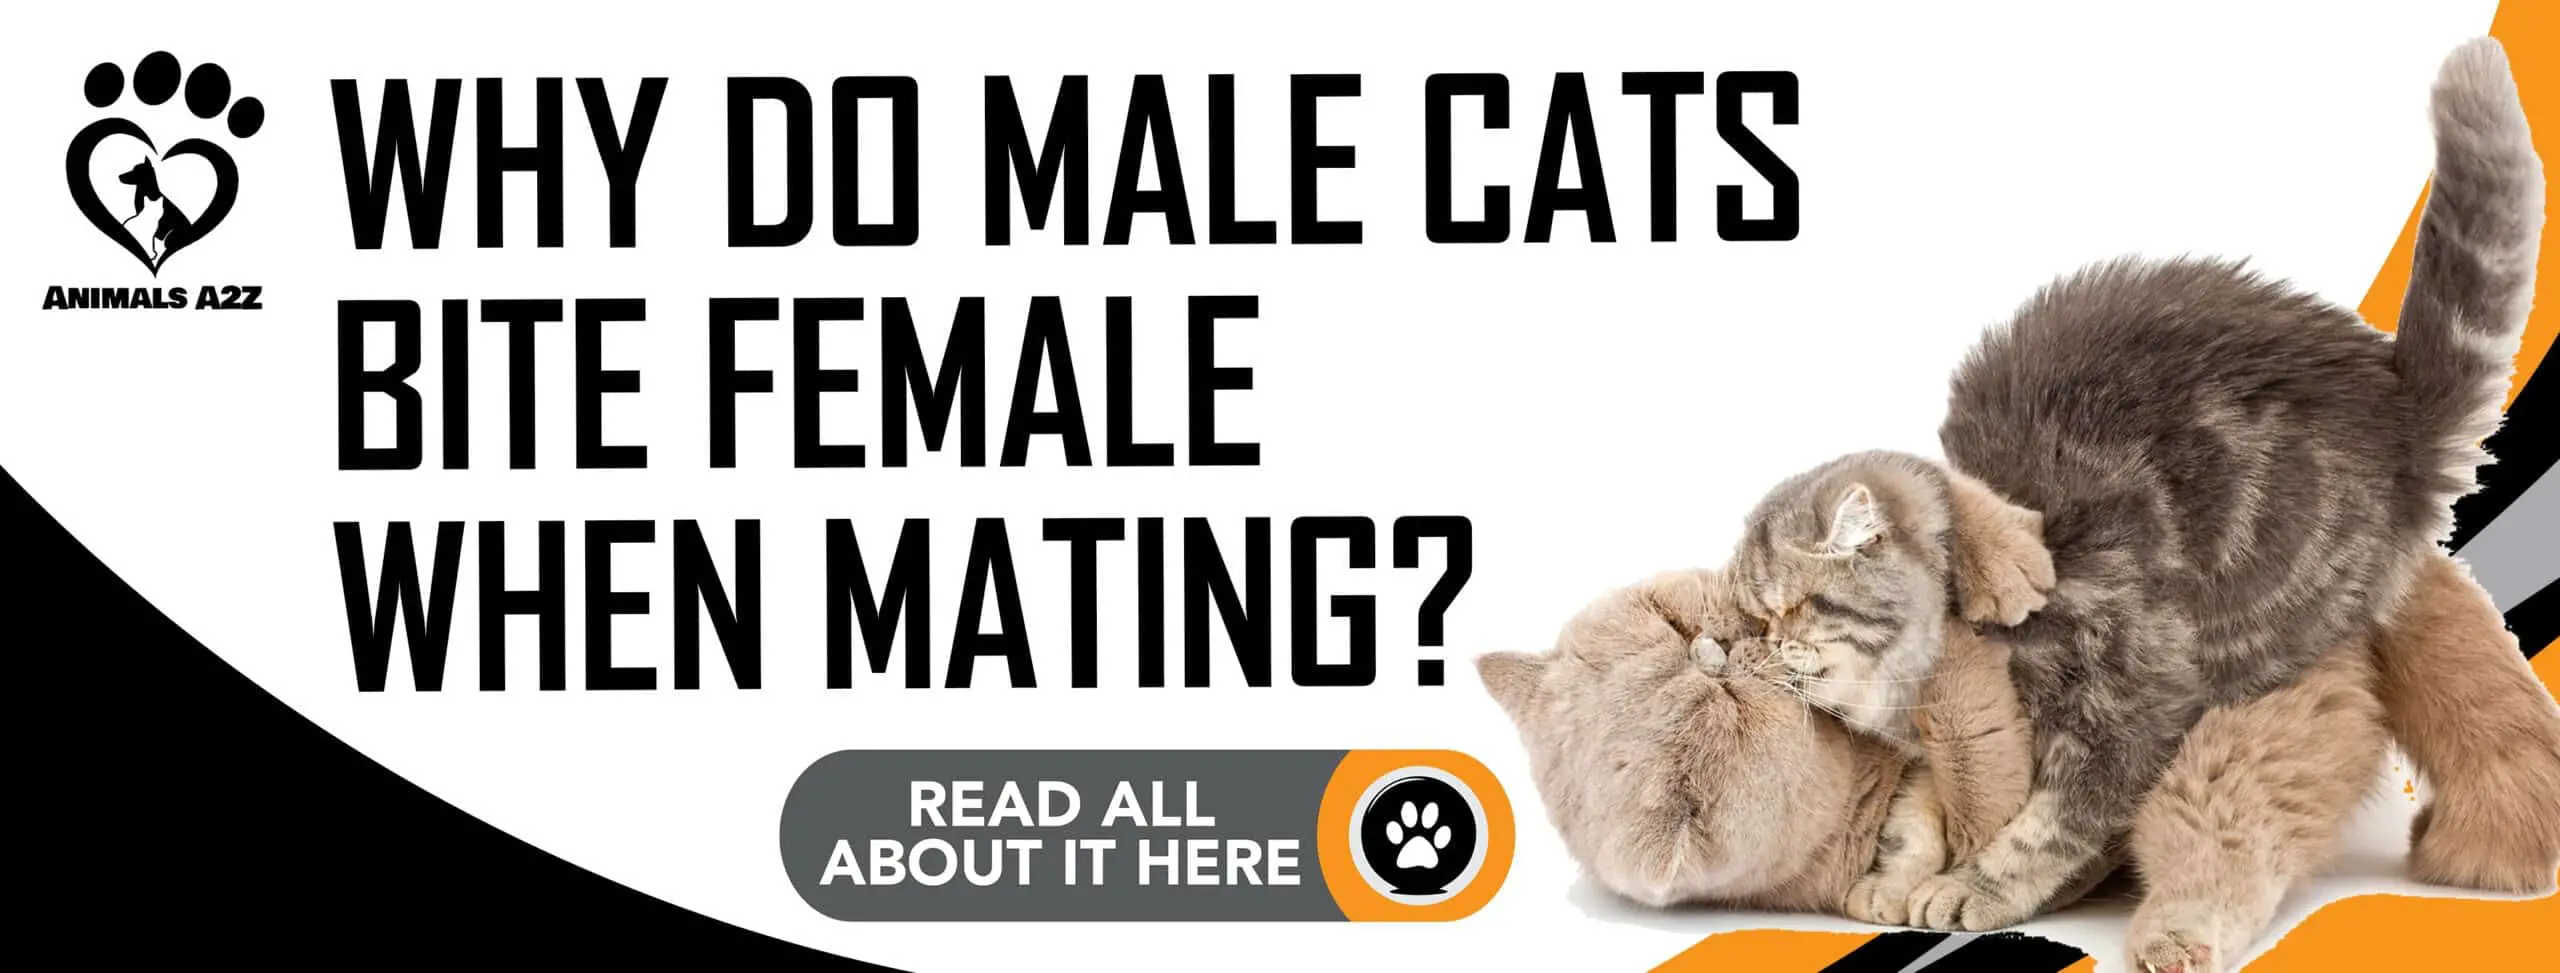 Pourquoi les chats mâles mordent-ils les femelles lors de l'accouplement ?